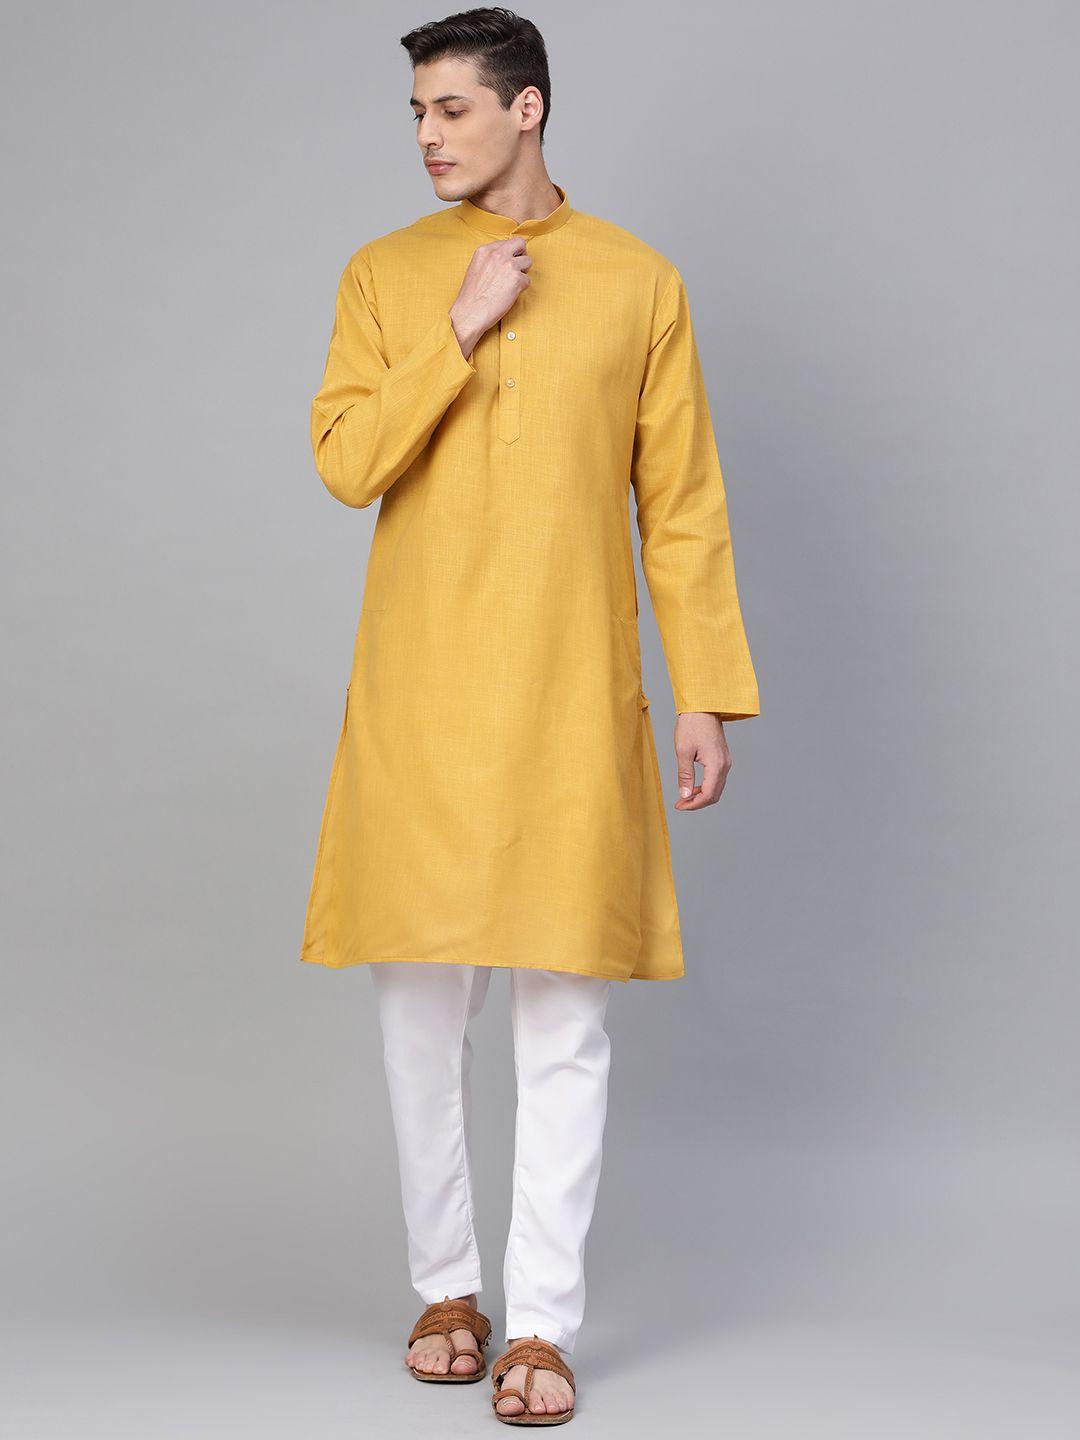 manq men mustard yellow & white solid kurta with pyjamas